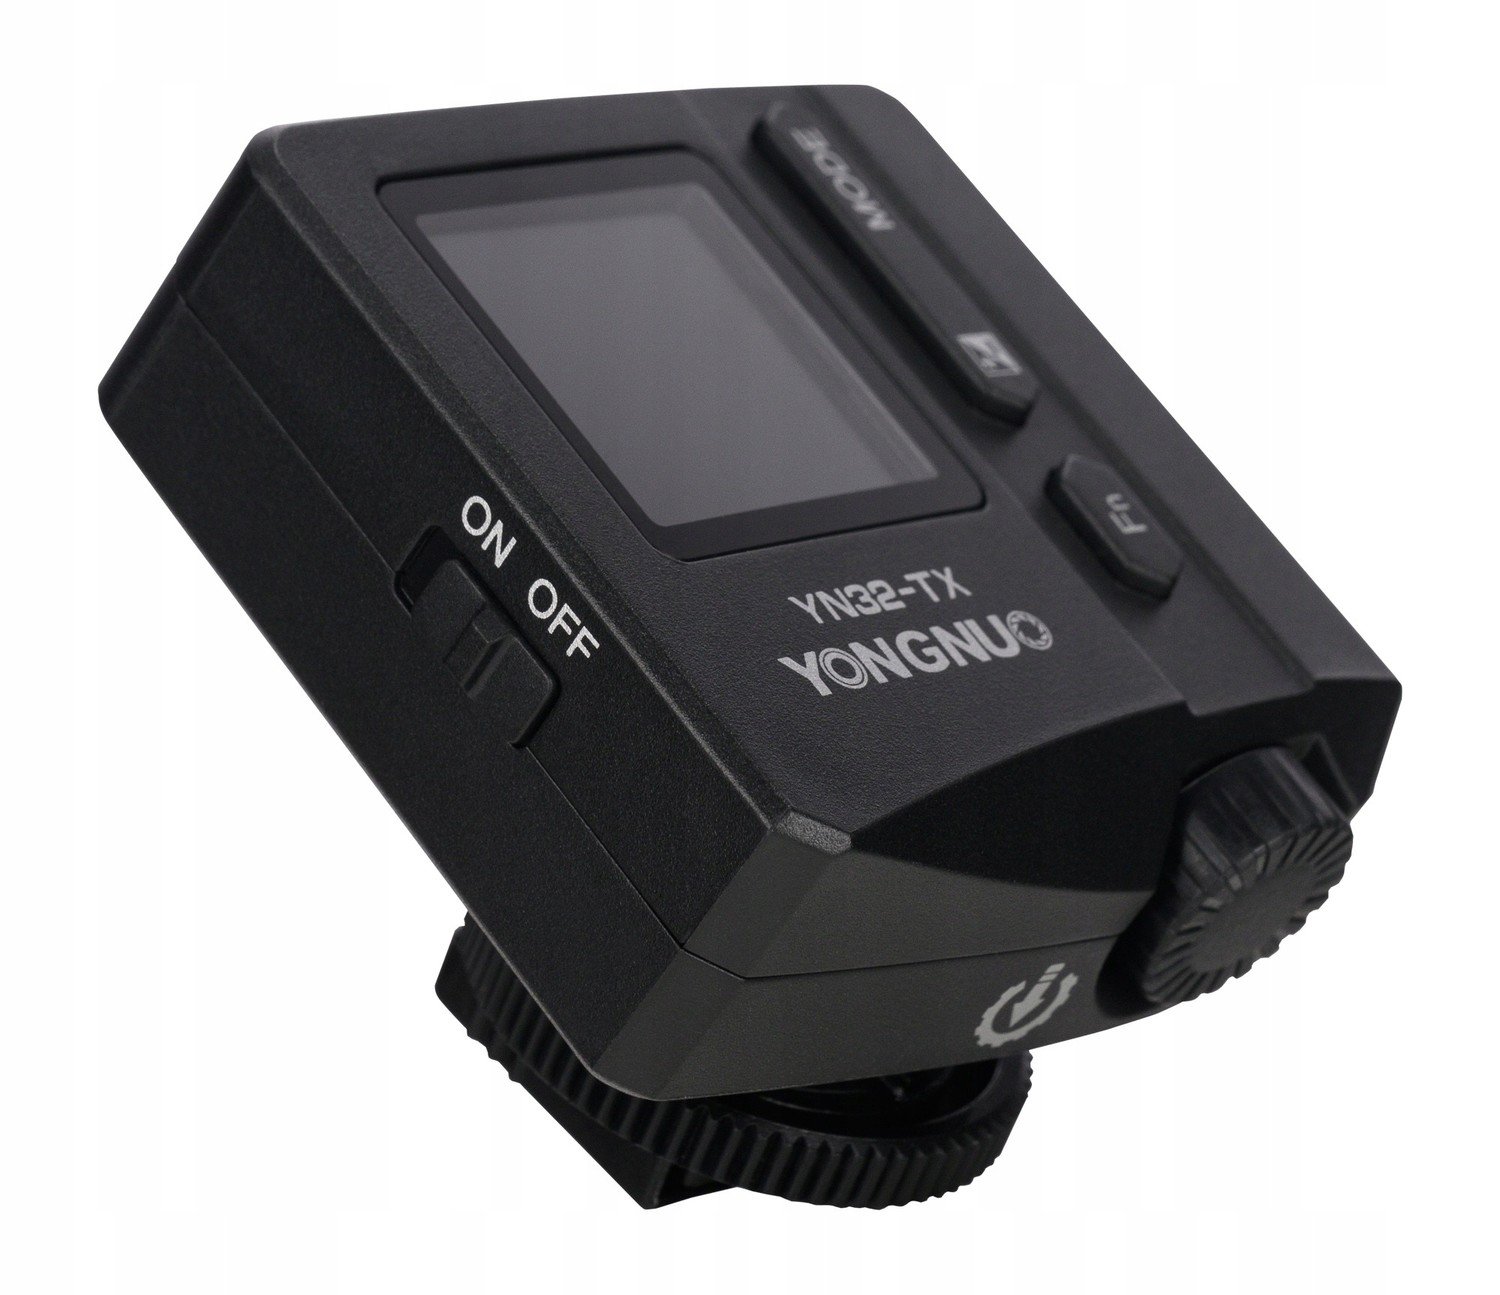 Rádiový ovladač Yongnuo YN32-TX pro Sony